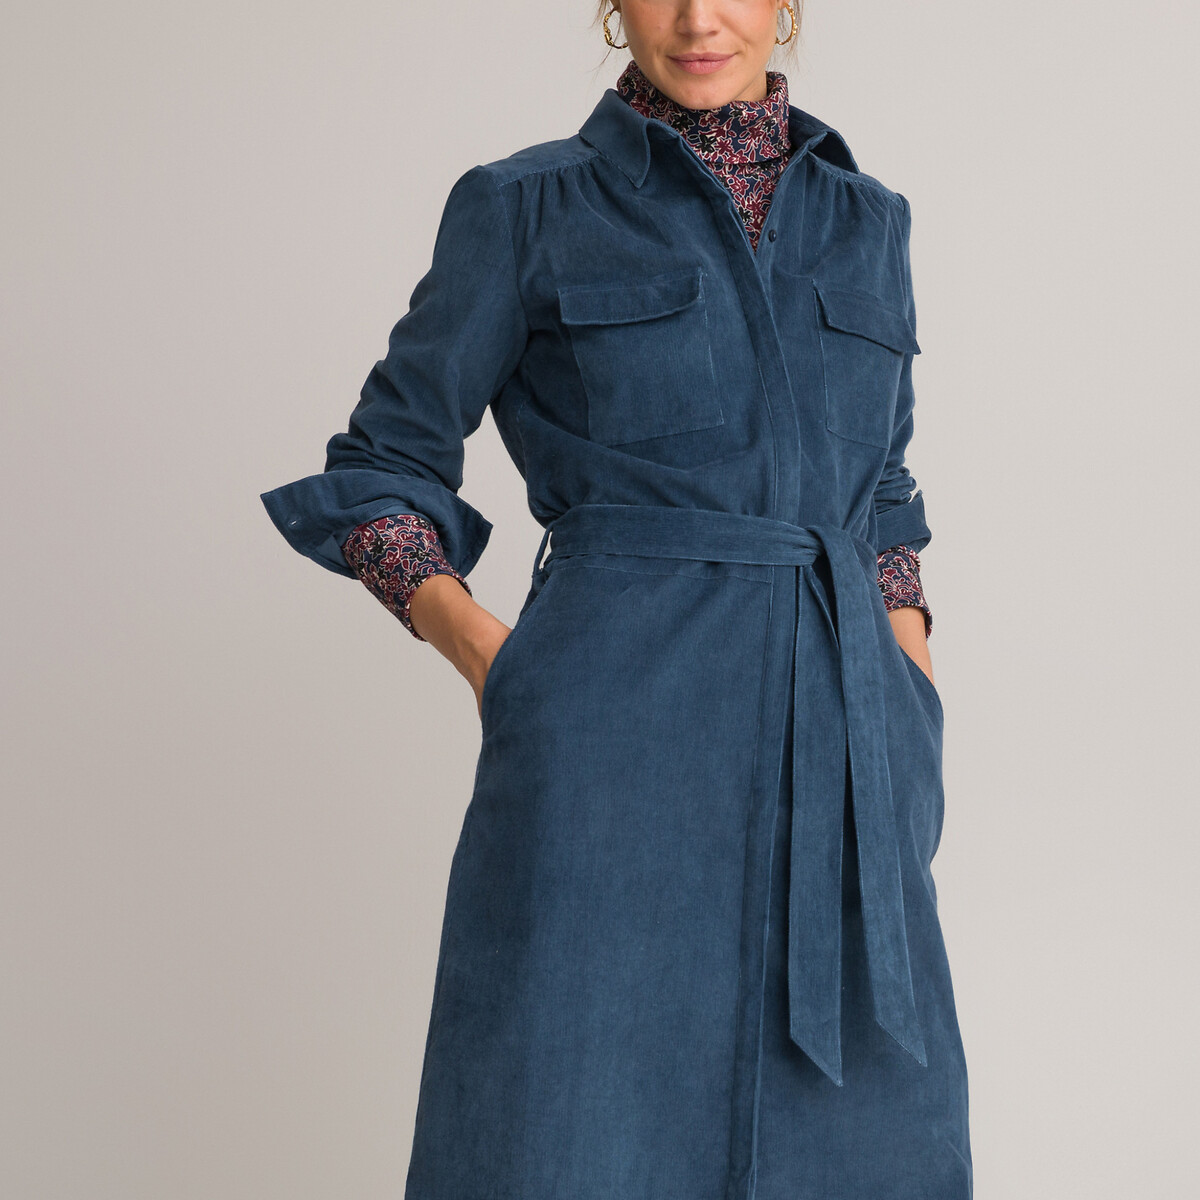 Платье ANNE WEYBURN Платье Длинное расклешенное из бархата с длинными рукавами 52 синий, размер 52 - фото 1